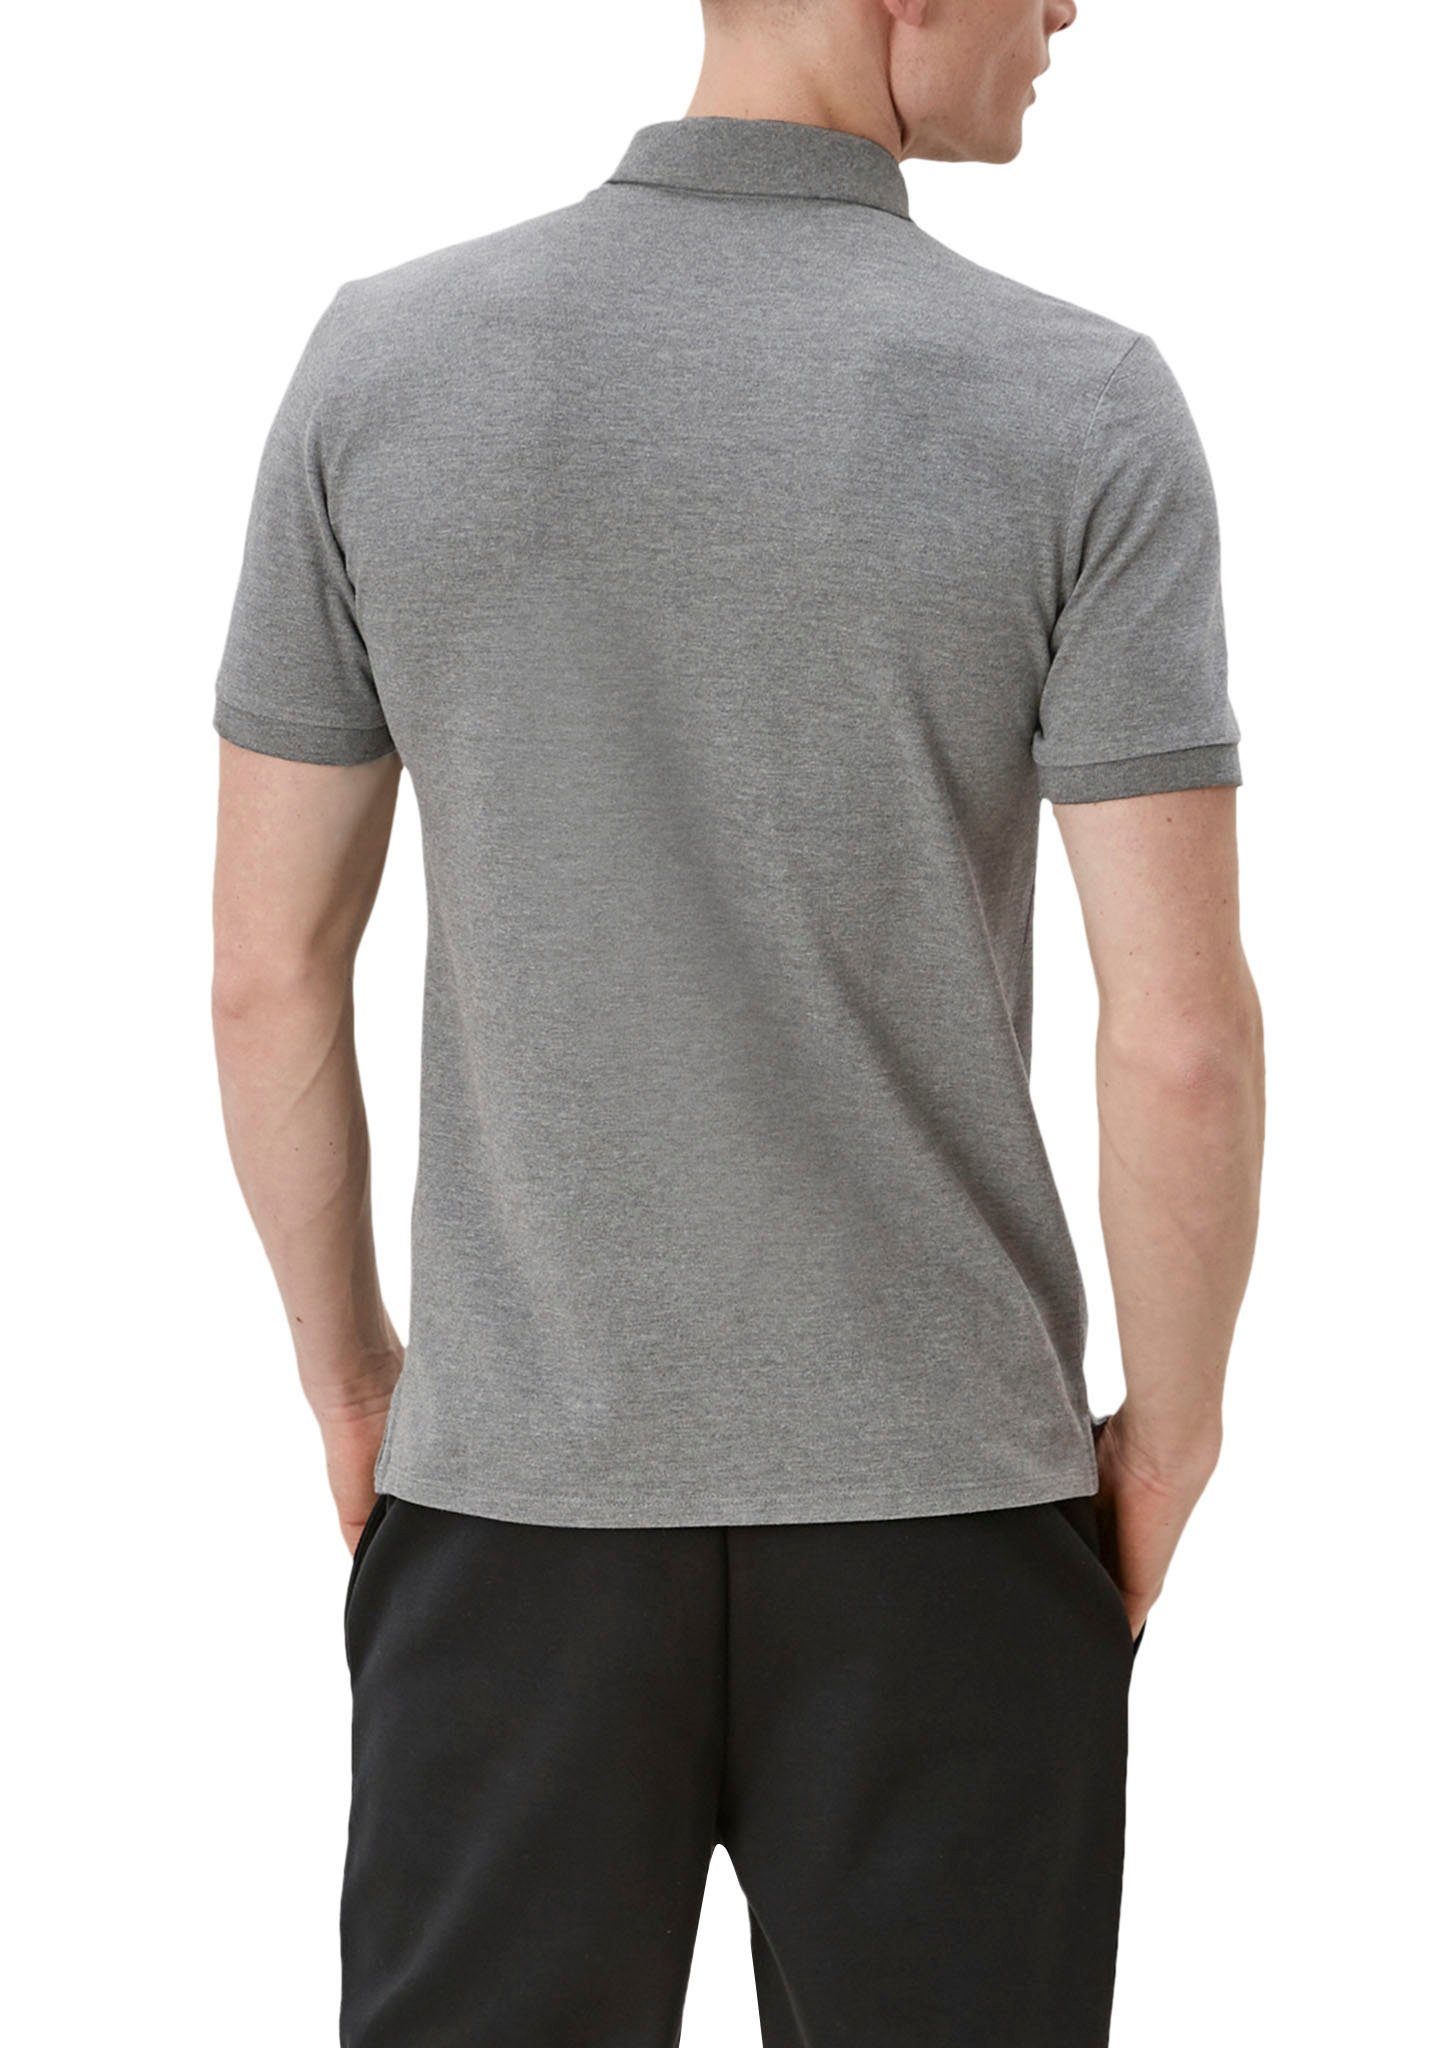 den Poloshirt grey/black an Seiten Einschnitte QS